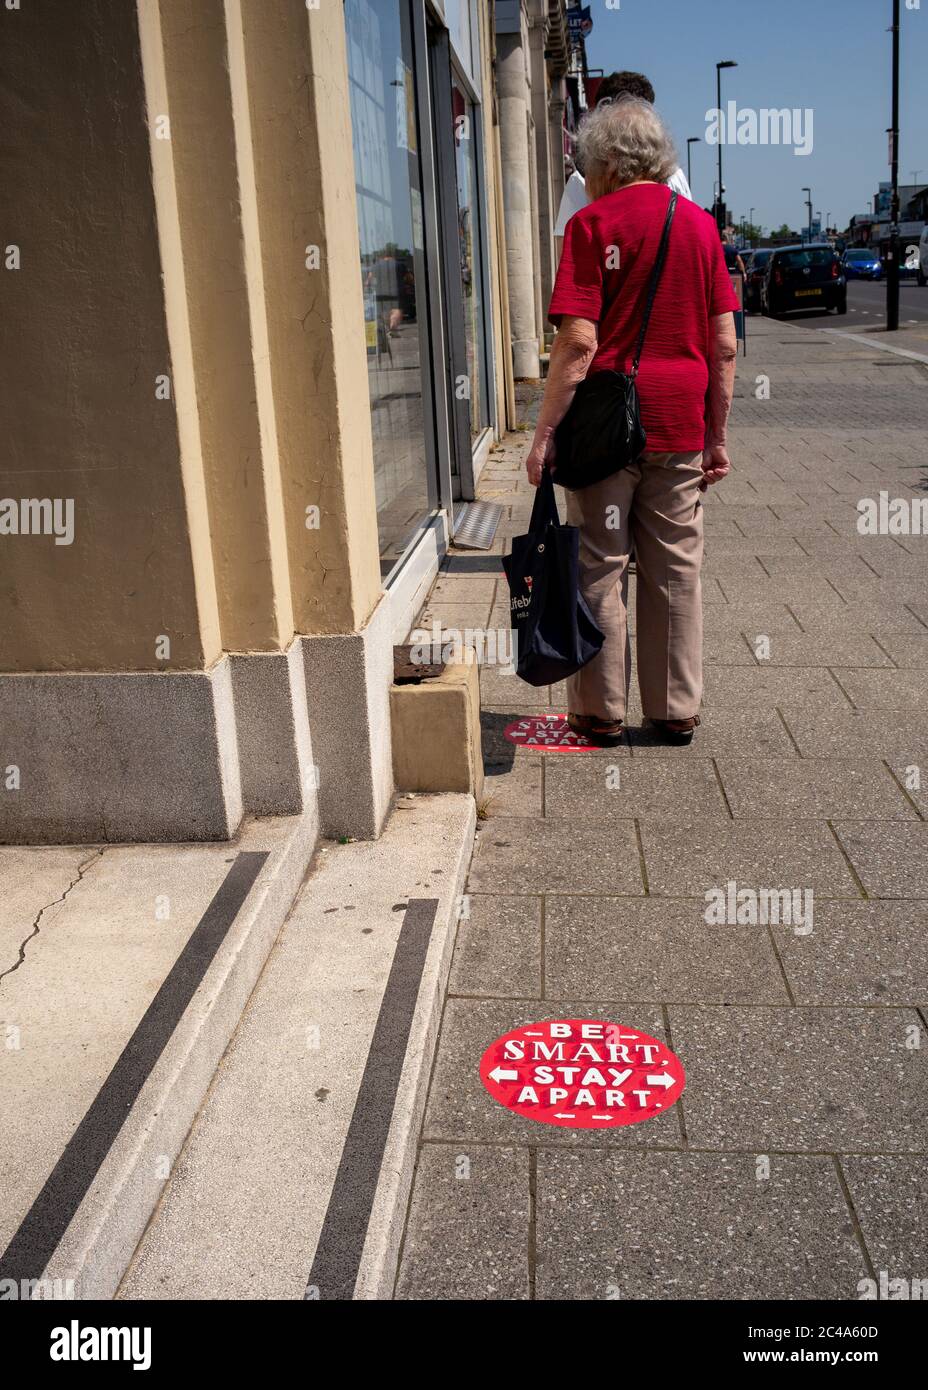 Cartelli di distanza sociale sul marciapiede durante la pandemia del coronavirus fuori dal negozio dell'ufficio postale di Portswood Southampton. Siate intelligenti, rimanete separati. Foto Stock